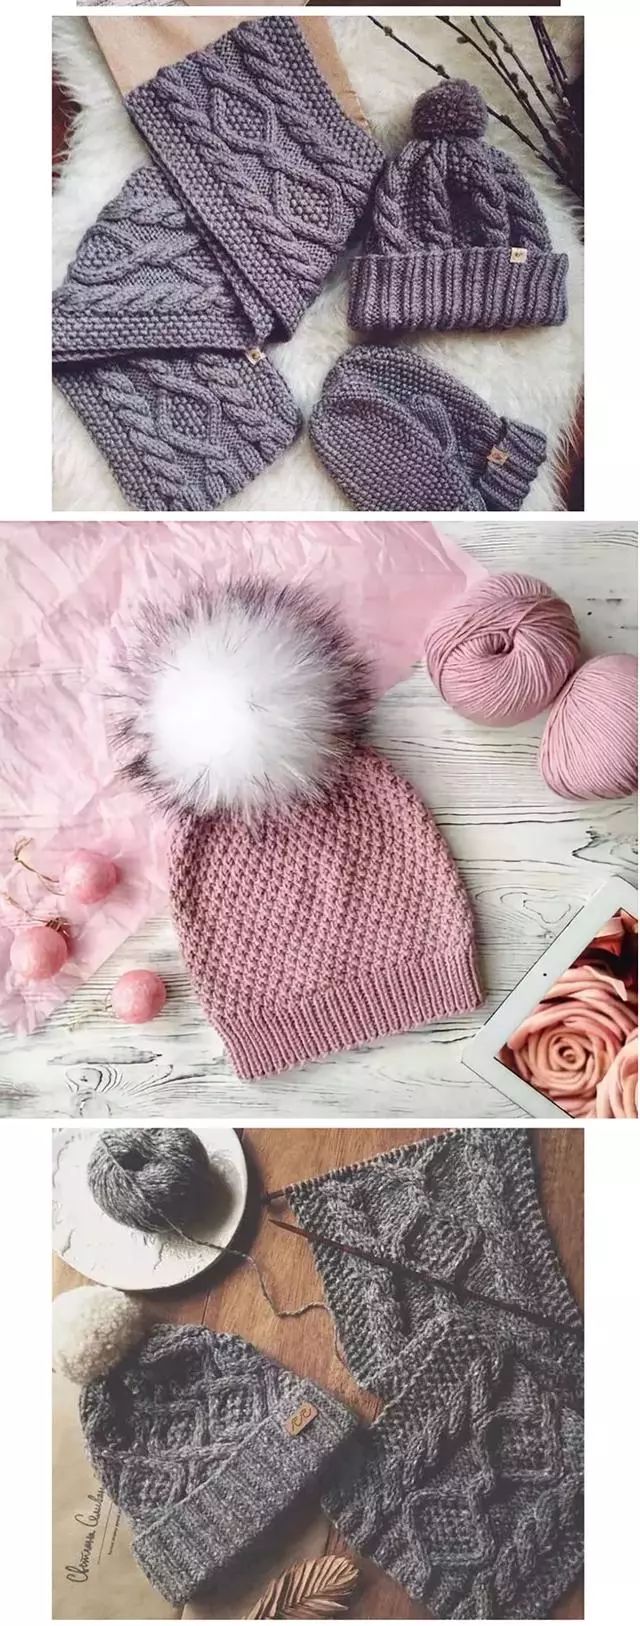 这样编织帽子真好看,编织起来还有这么多花样,每款都